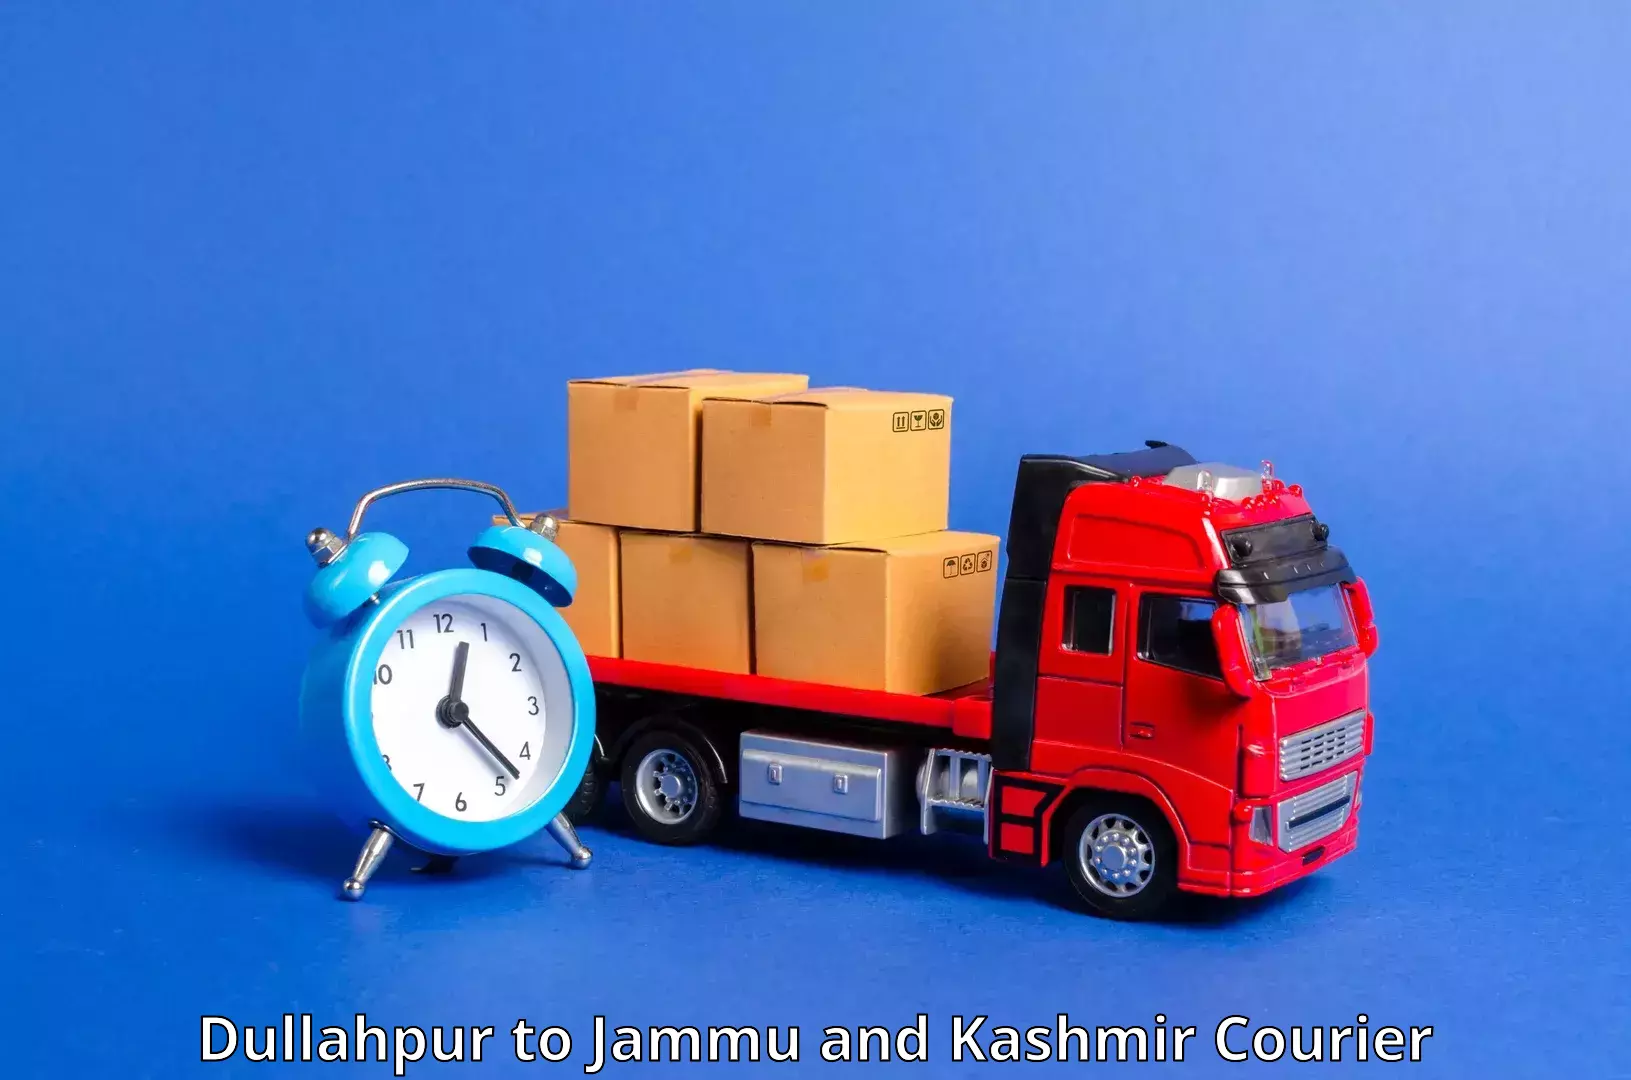 24/7 courier service Dullahpur to NIT Srinagar